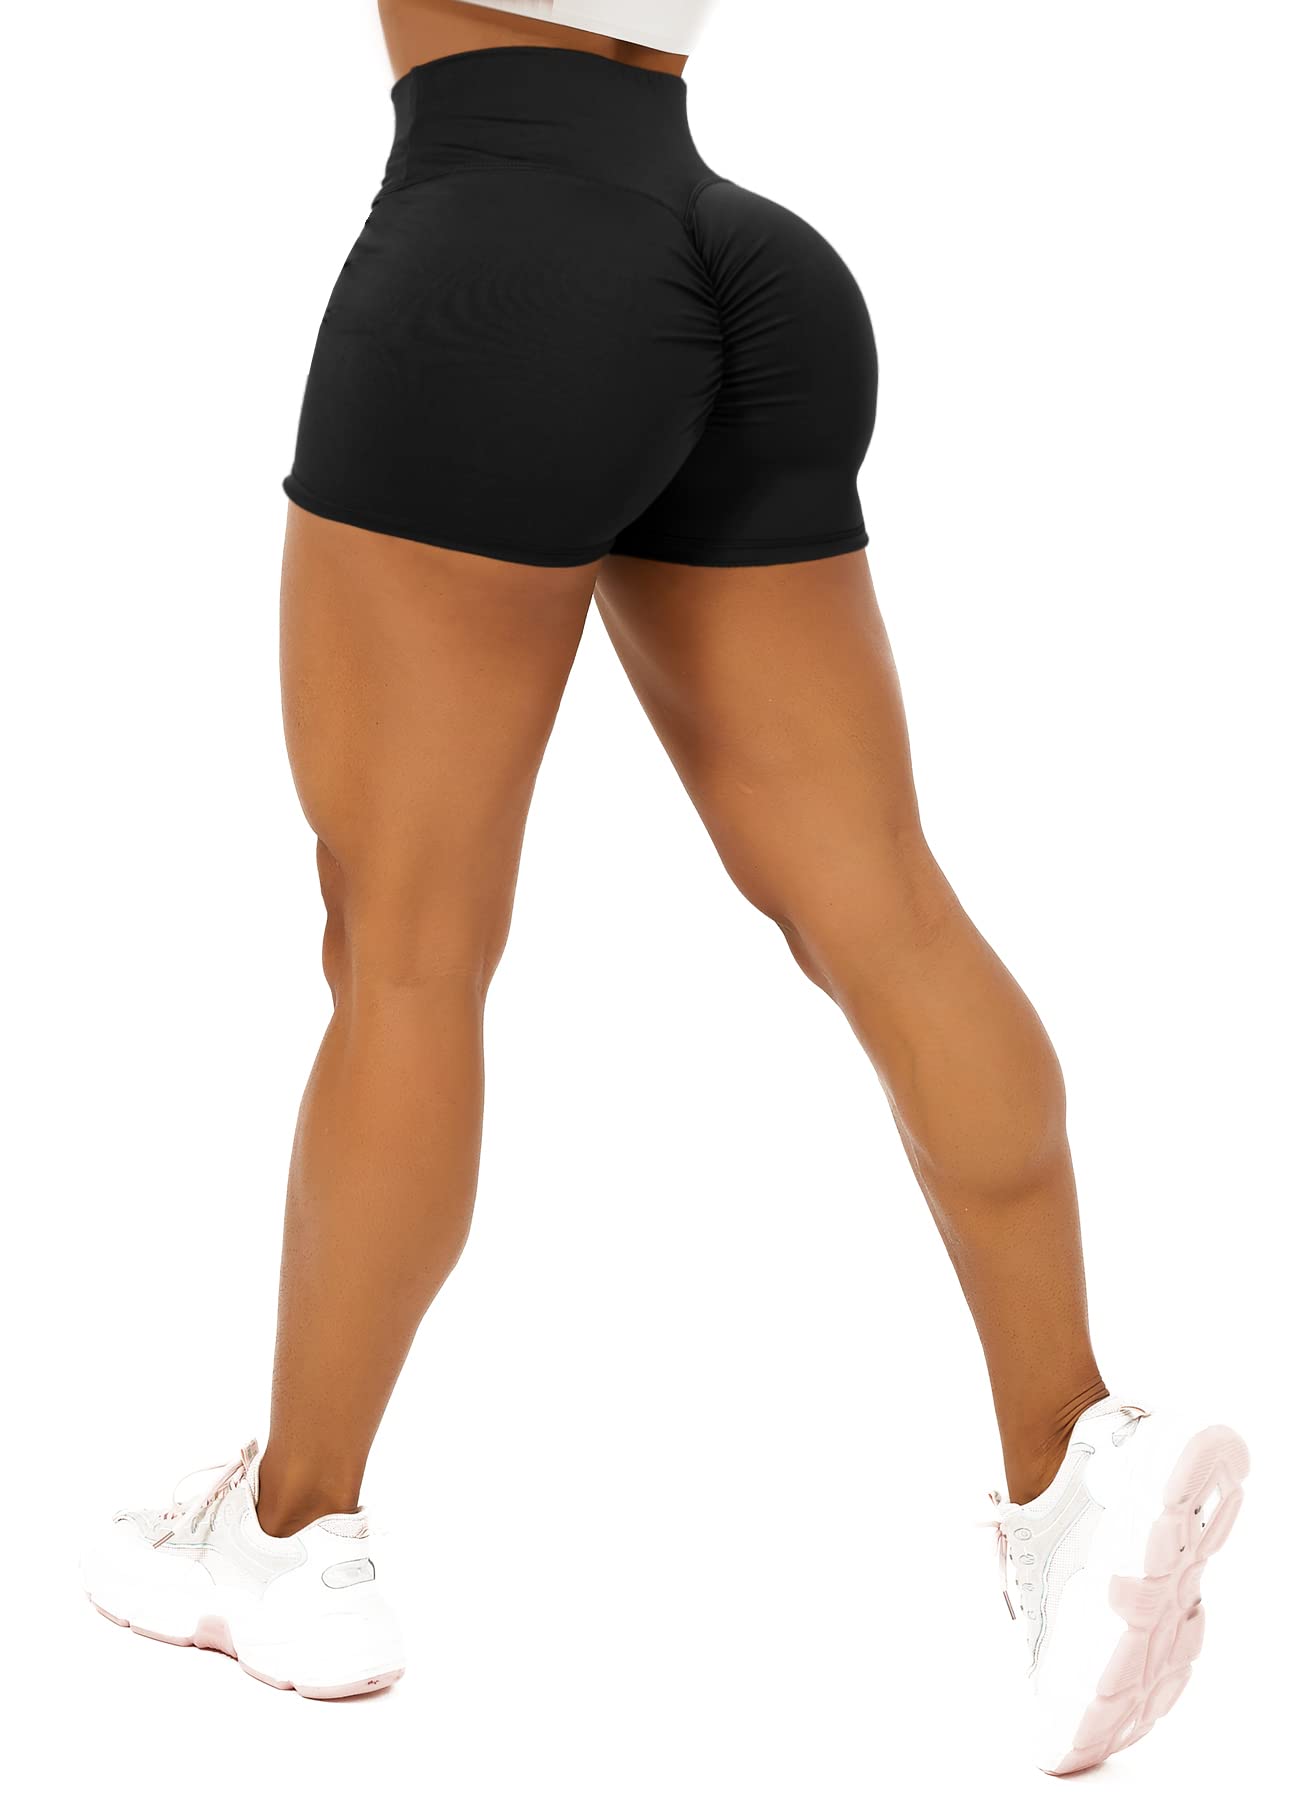 acheter TZLDN Legging court Scrunch - Pour femme - Pour le sport, le yoga, le fitness, le cyclisme, l´entraînement sjVUYns9B Vente chaude